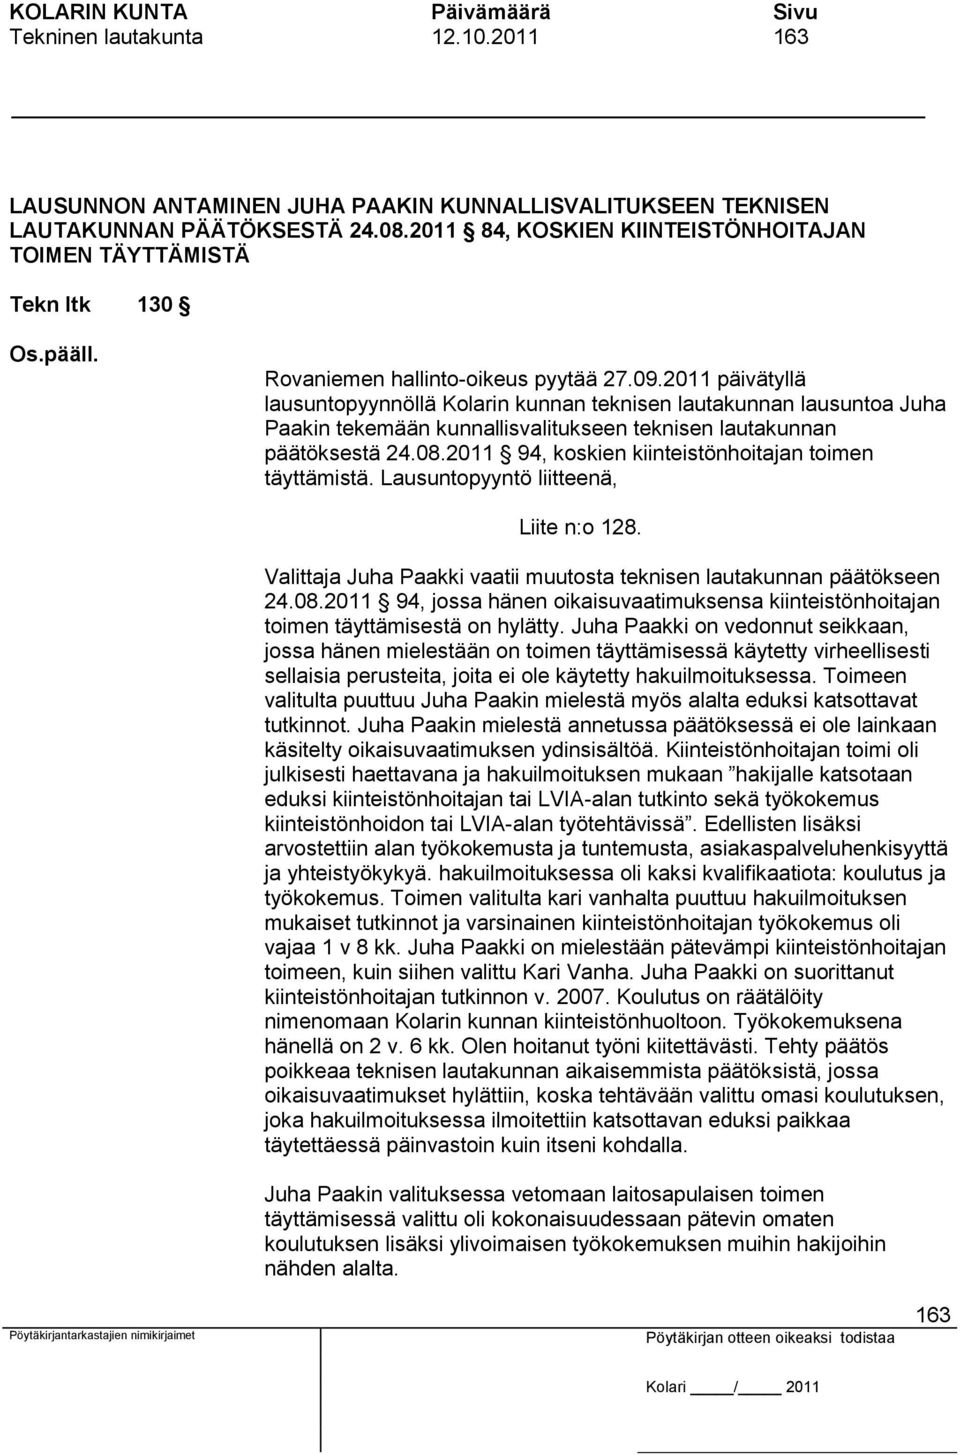 2011 päivätyllä lausuntopyynnöllä Kolarin kunnan teknisen lautakunnan lausuntoa Juha Paakin tekemään kunnallisvalitukseen teknisen lautakunnan päätöksestä 24.08.